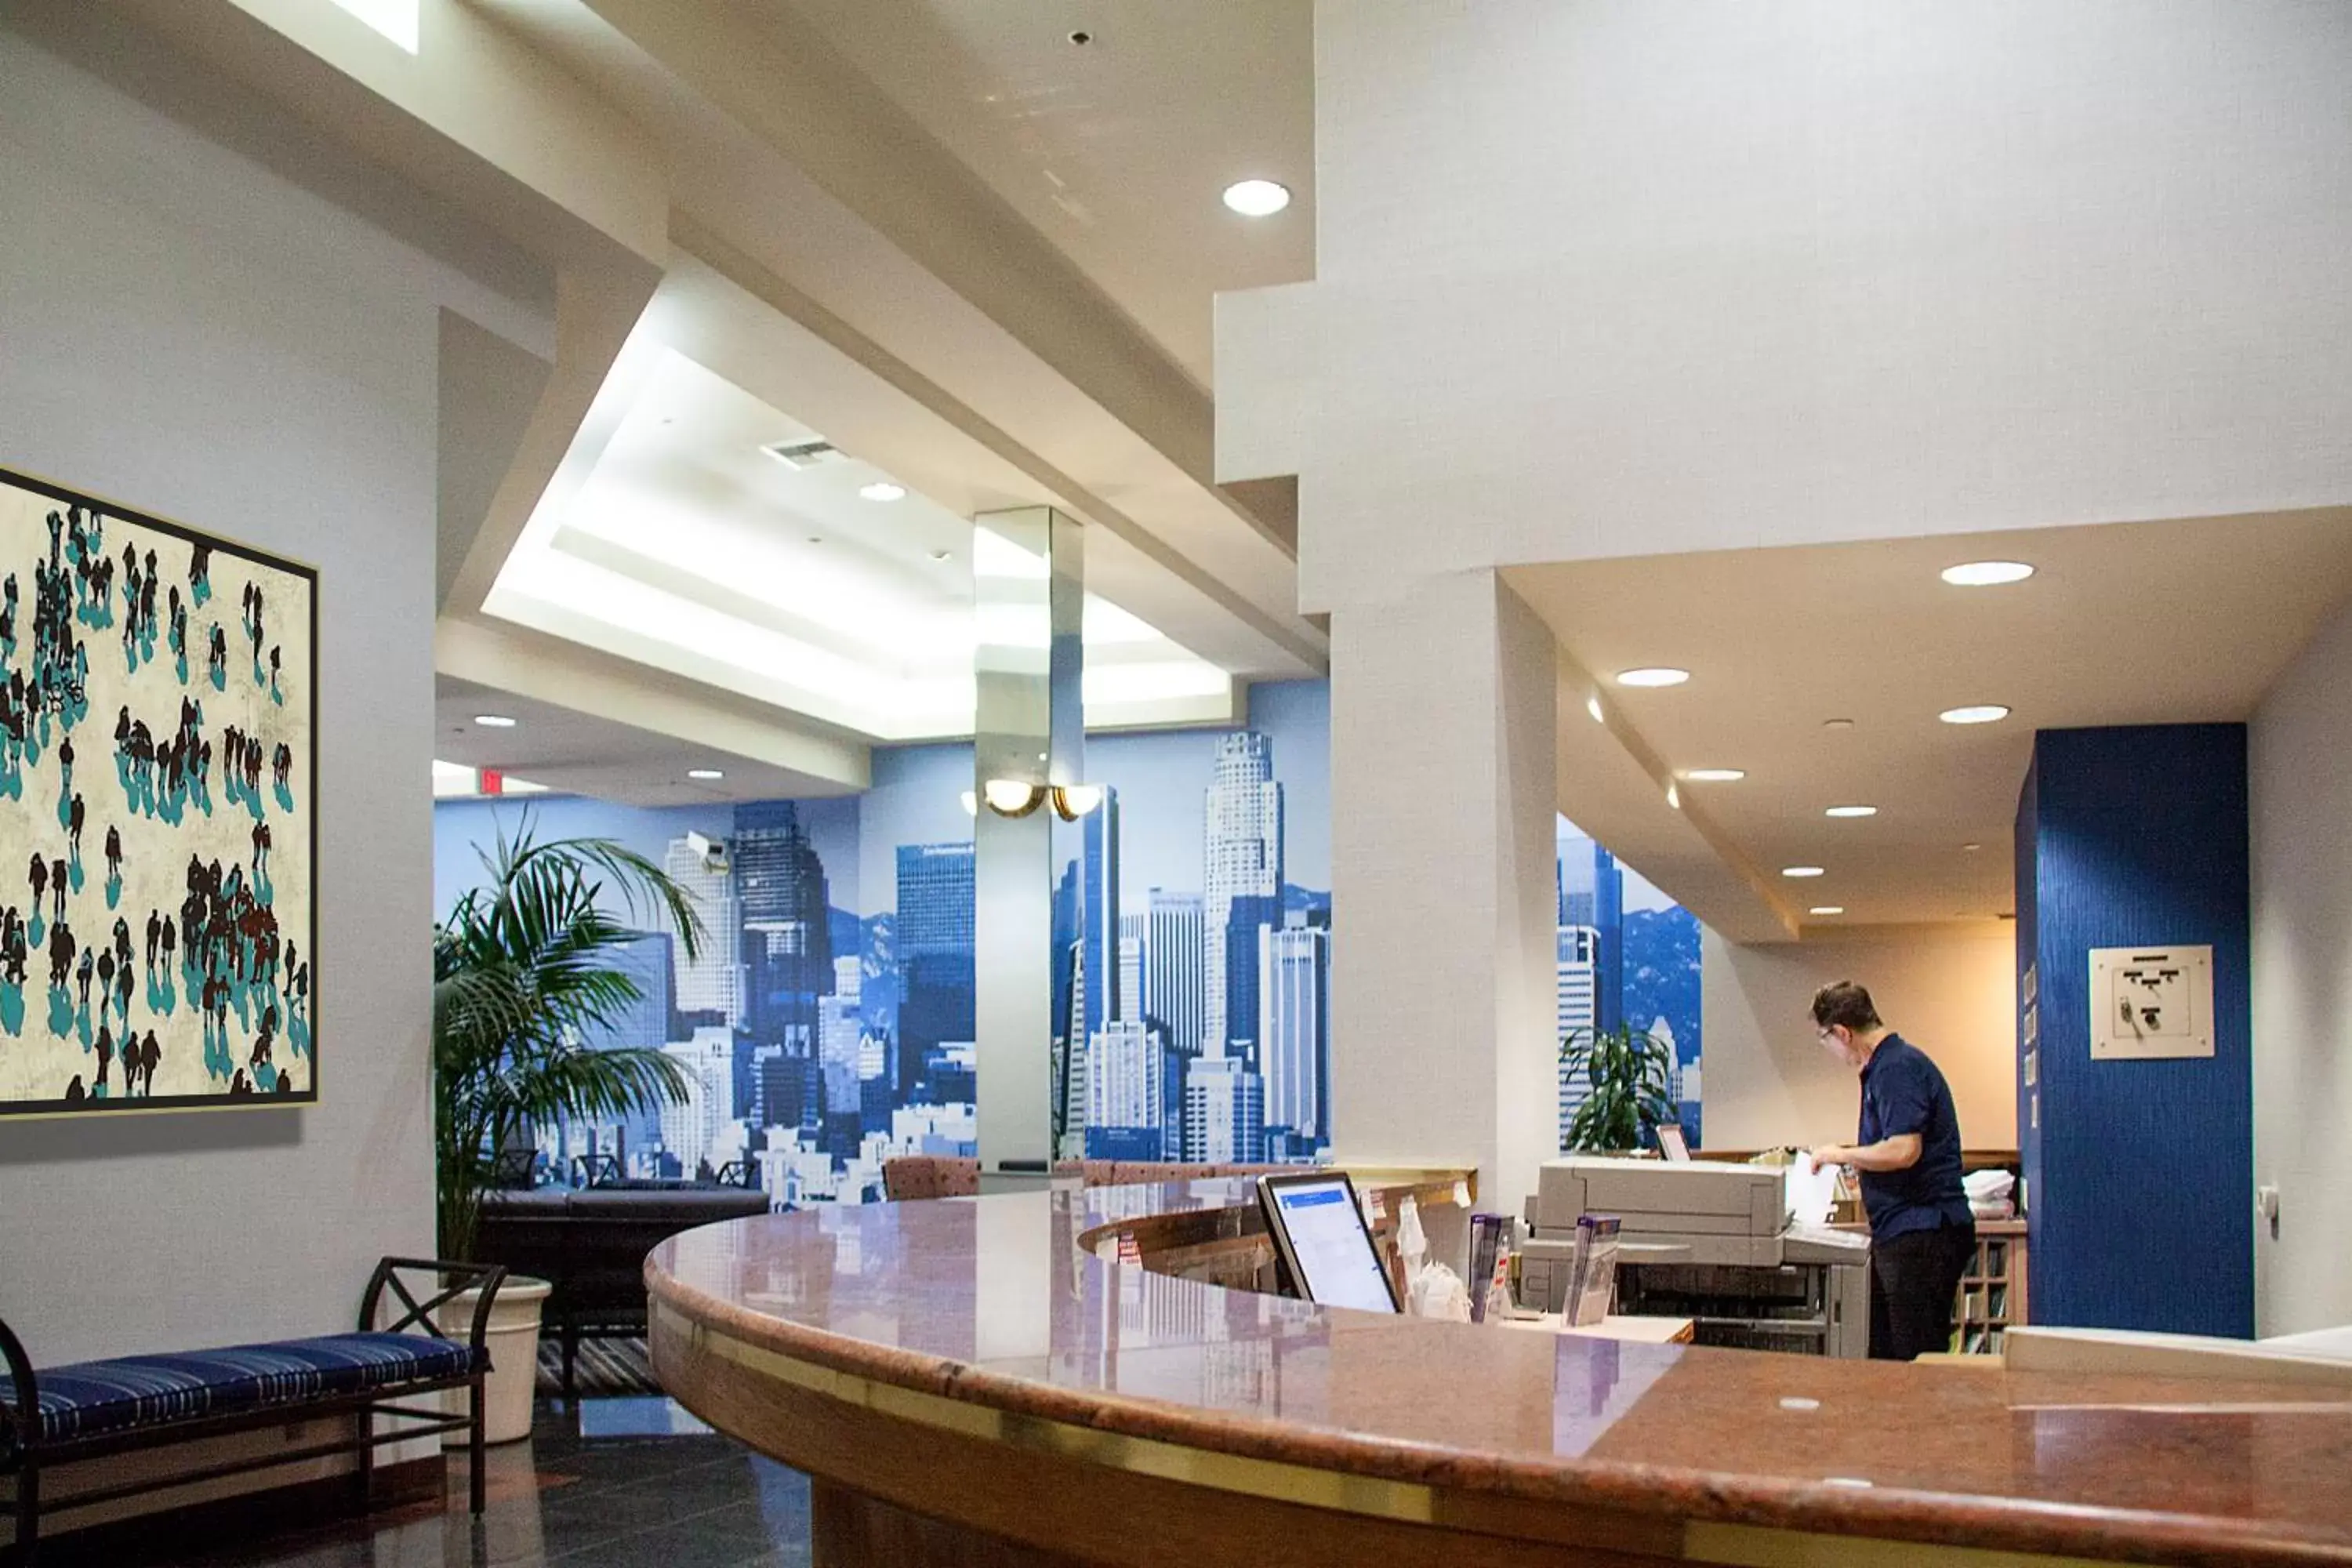 Lobby or reception, Lobby/Reception in Kawada Hotel